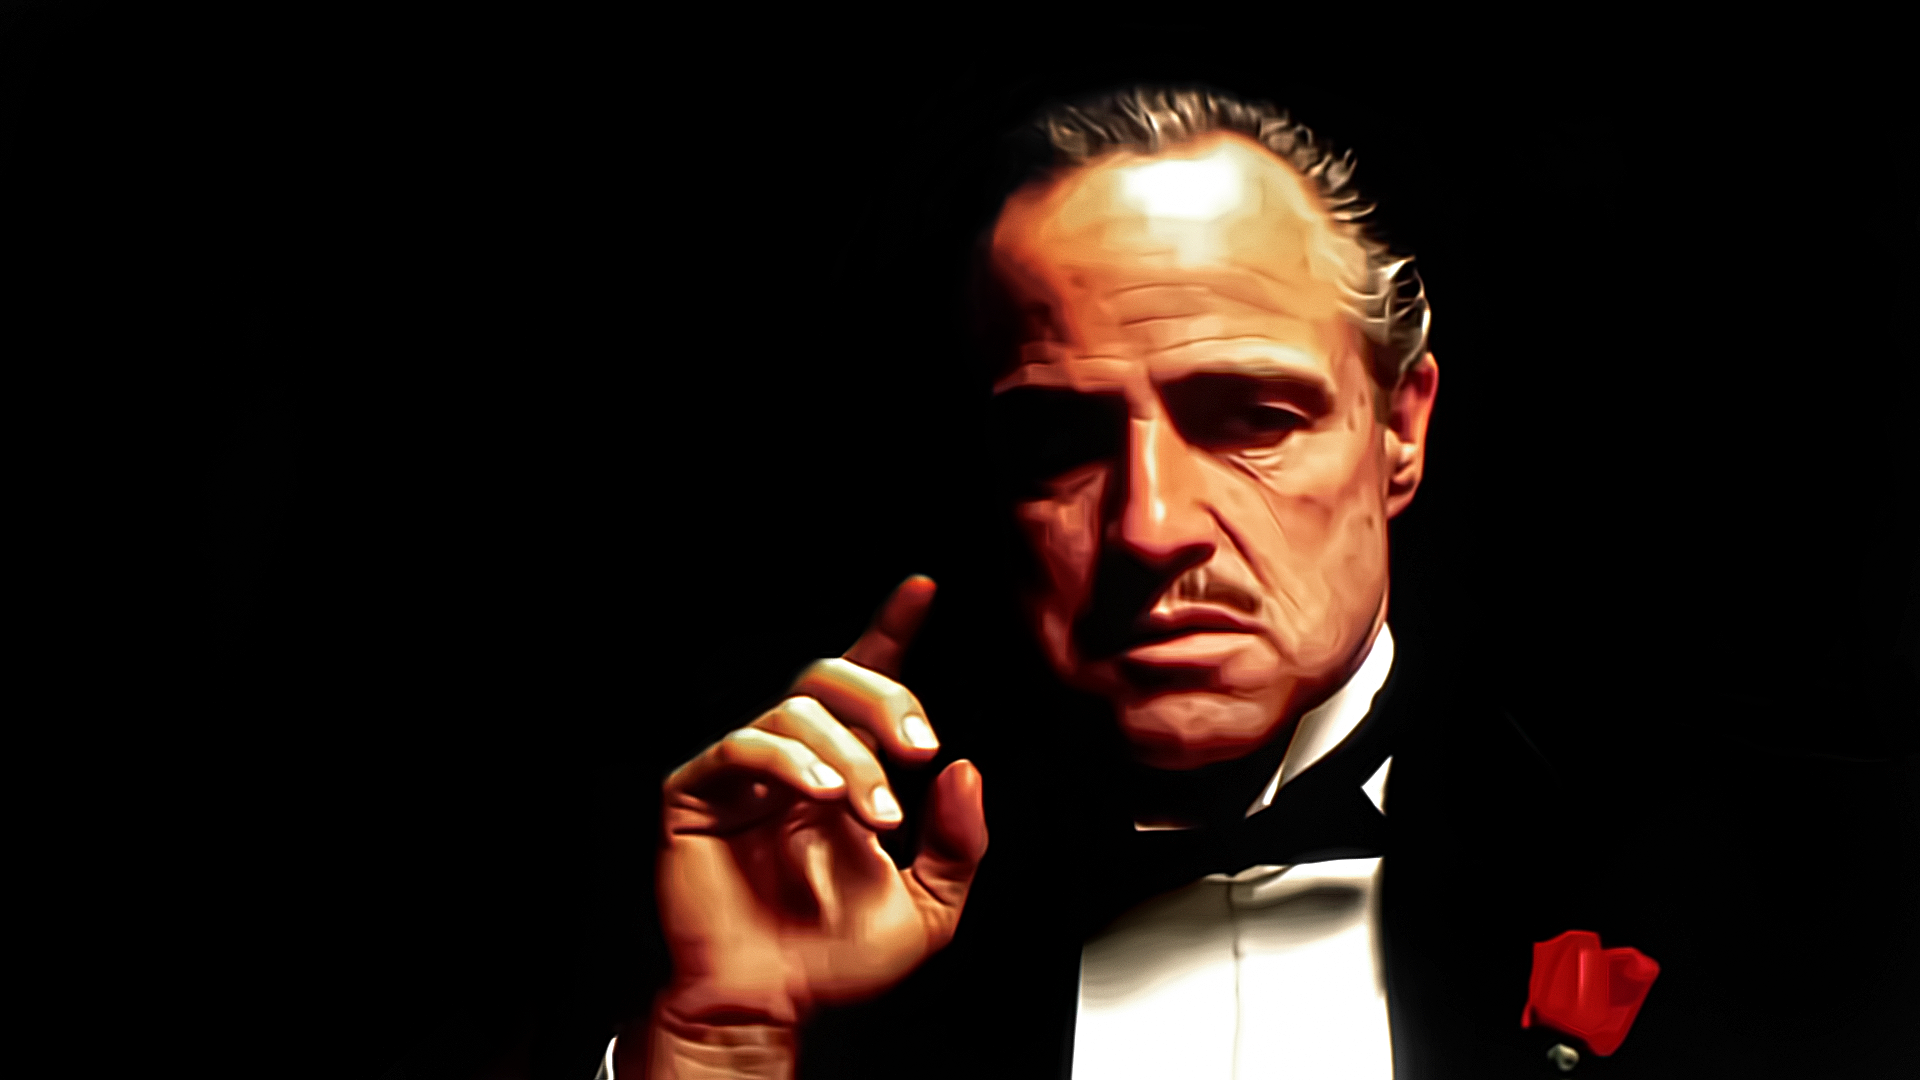 The Godfather Marlon Brando 1920x1080